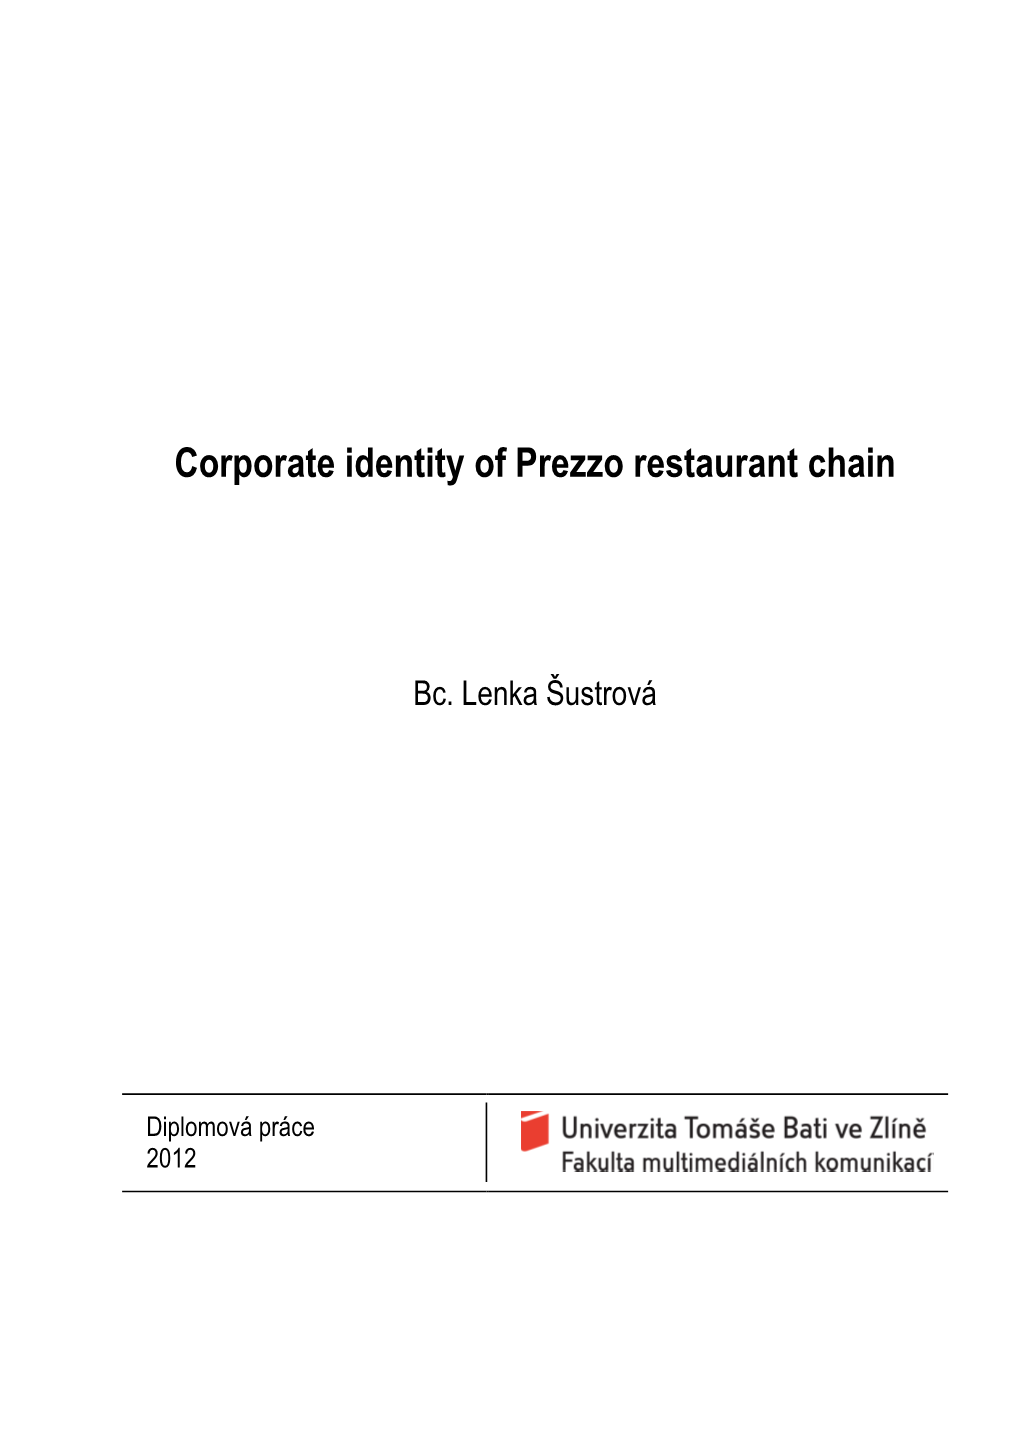 Corporate Identity of Prezzo Restaurant Chain